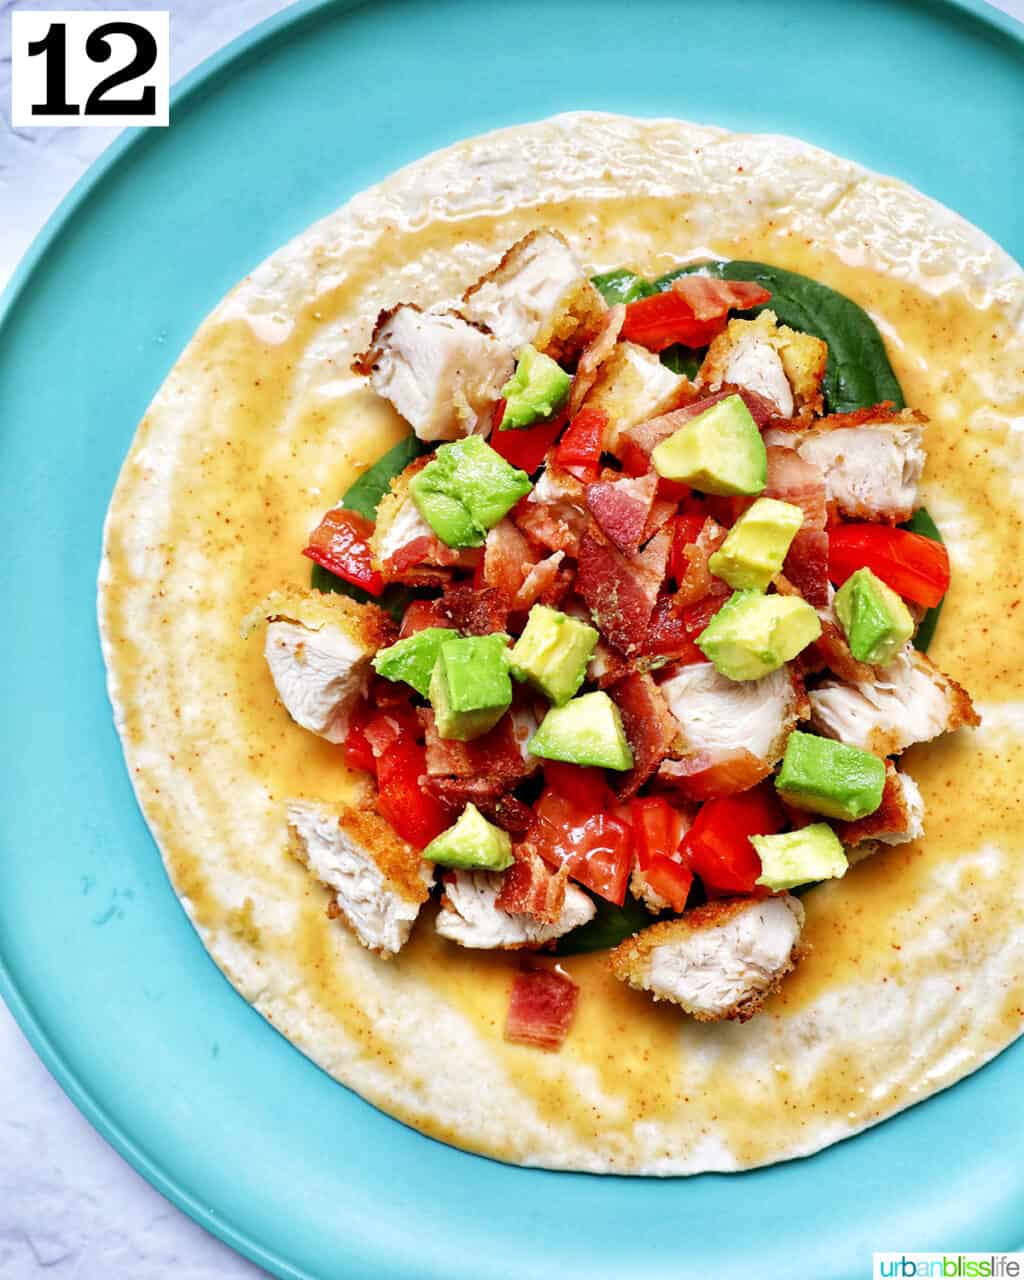 avocado, tomatoes, chicken, bacon, spinach on a tortilla wrap.